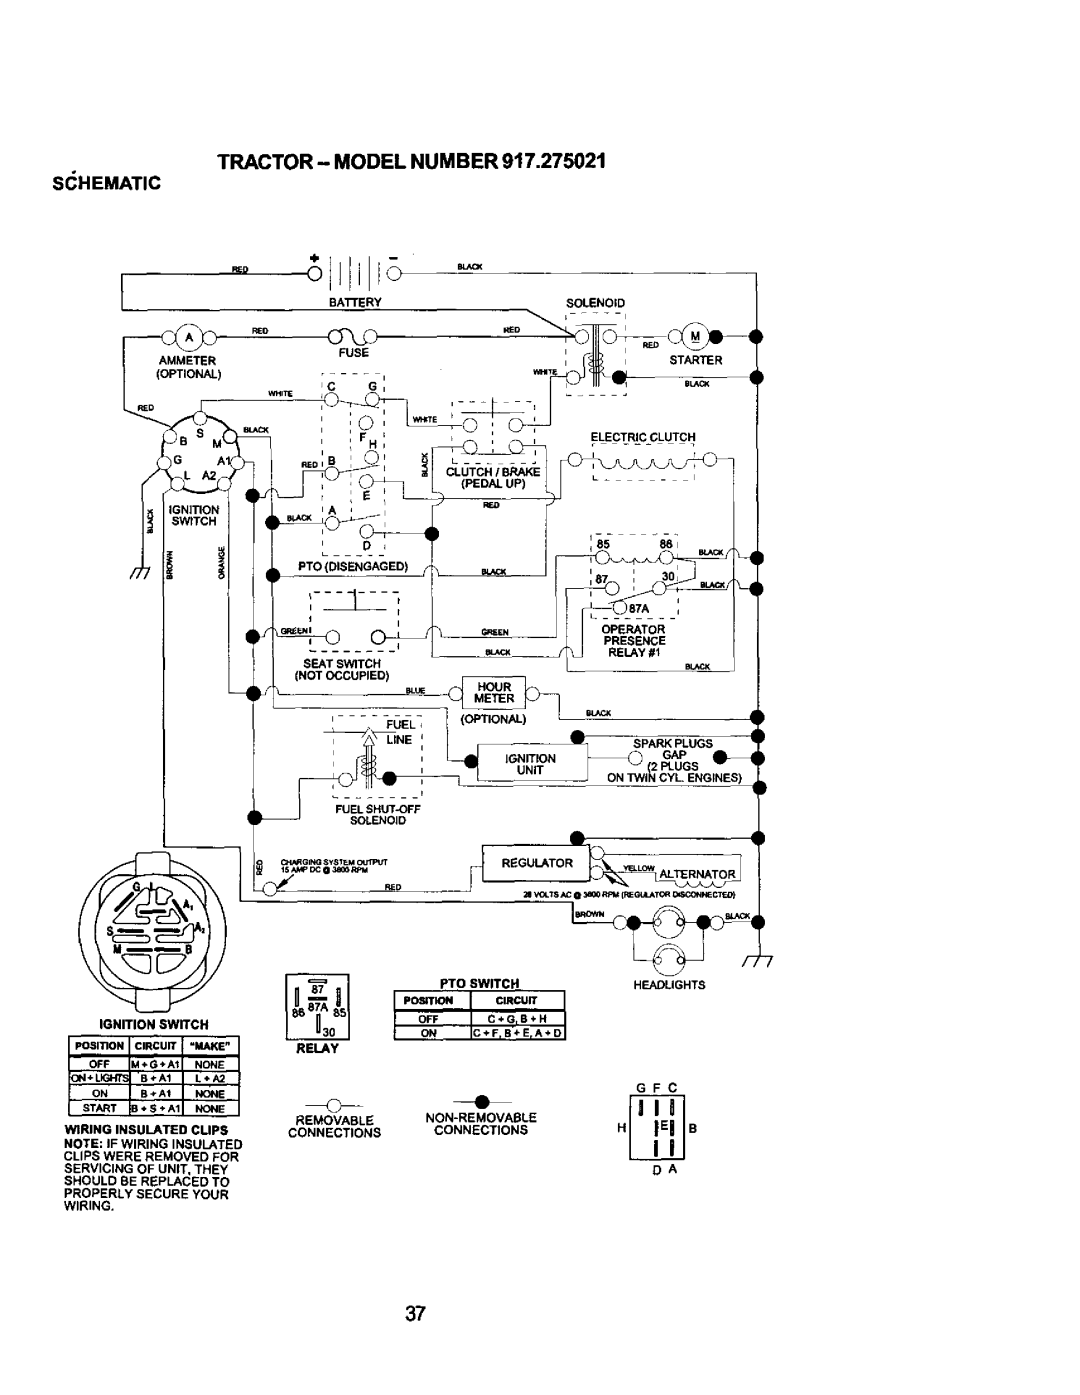 Craftsman 917.275021 manual Tractor - Model Number, S_Hematic, Regulator R 